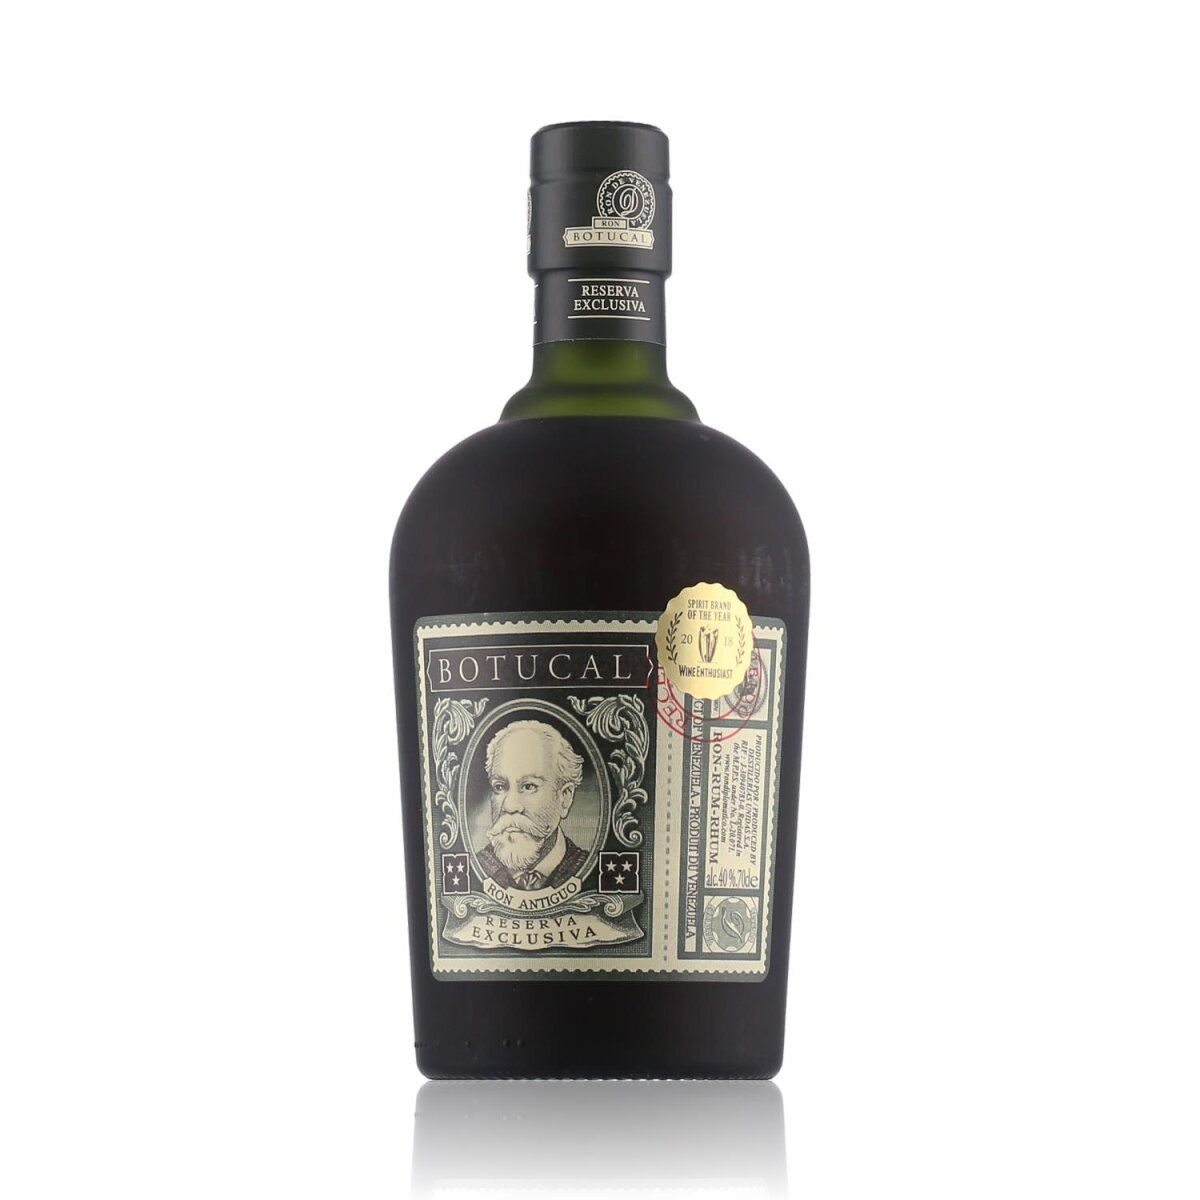 Botucal Reserva Exclusiva (Diplomatico) Rum 40% Vol. 0,7l, 38,09 €